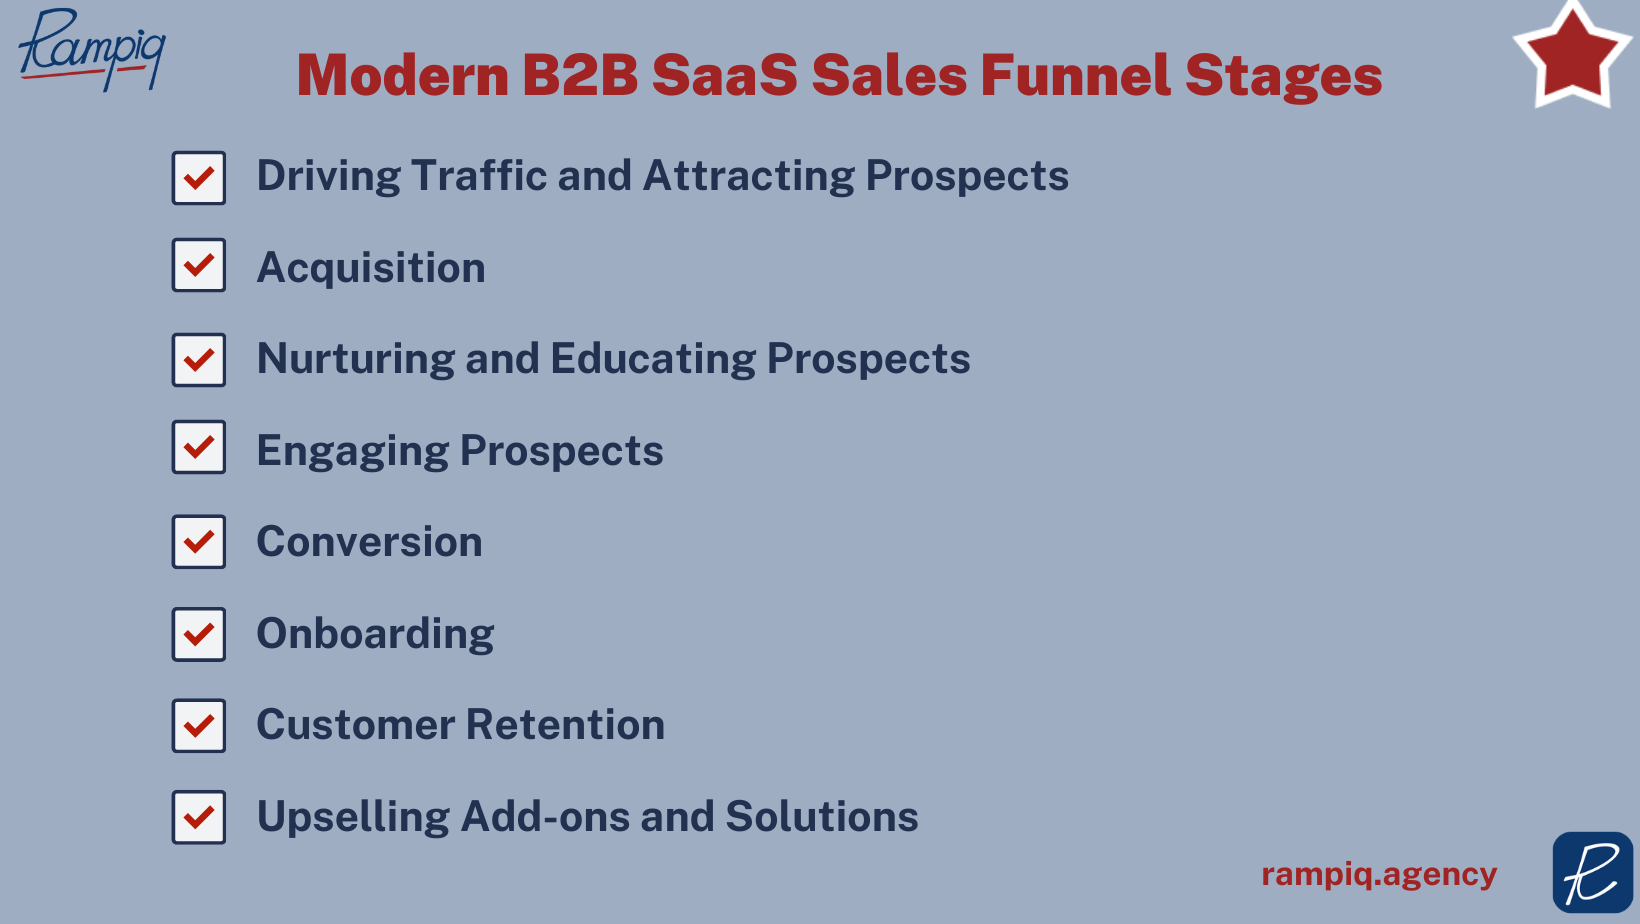 B2B SaaS Sales Funnel Stages